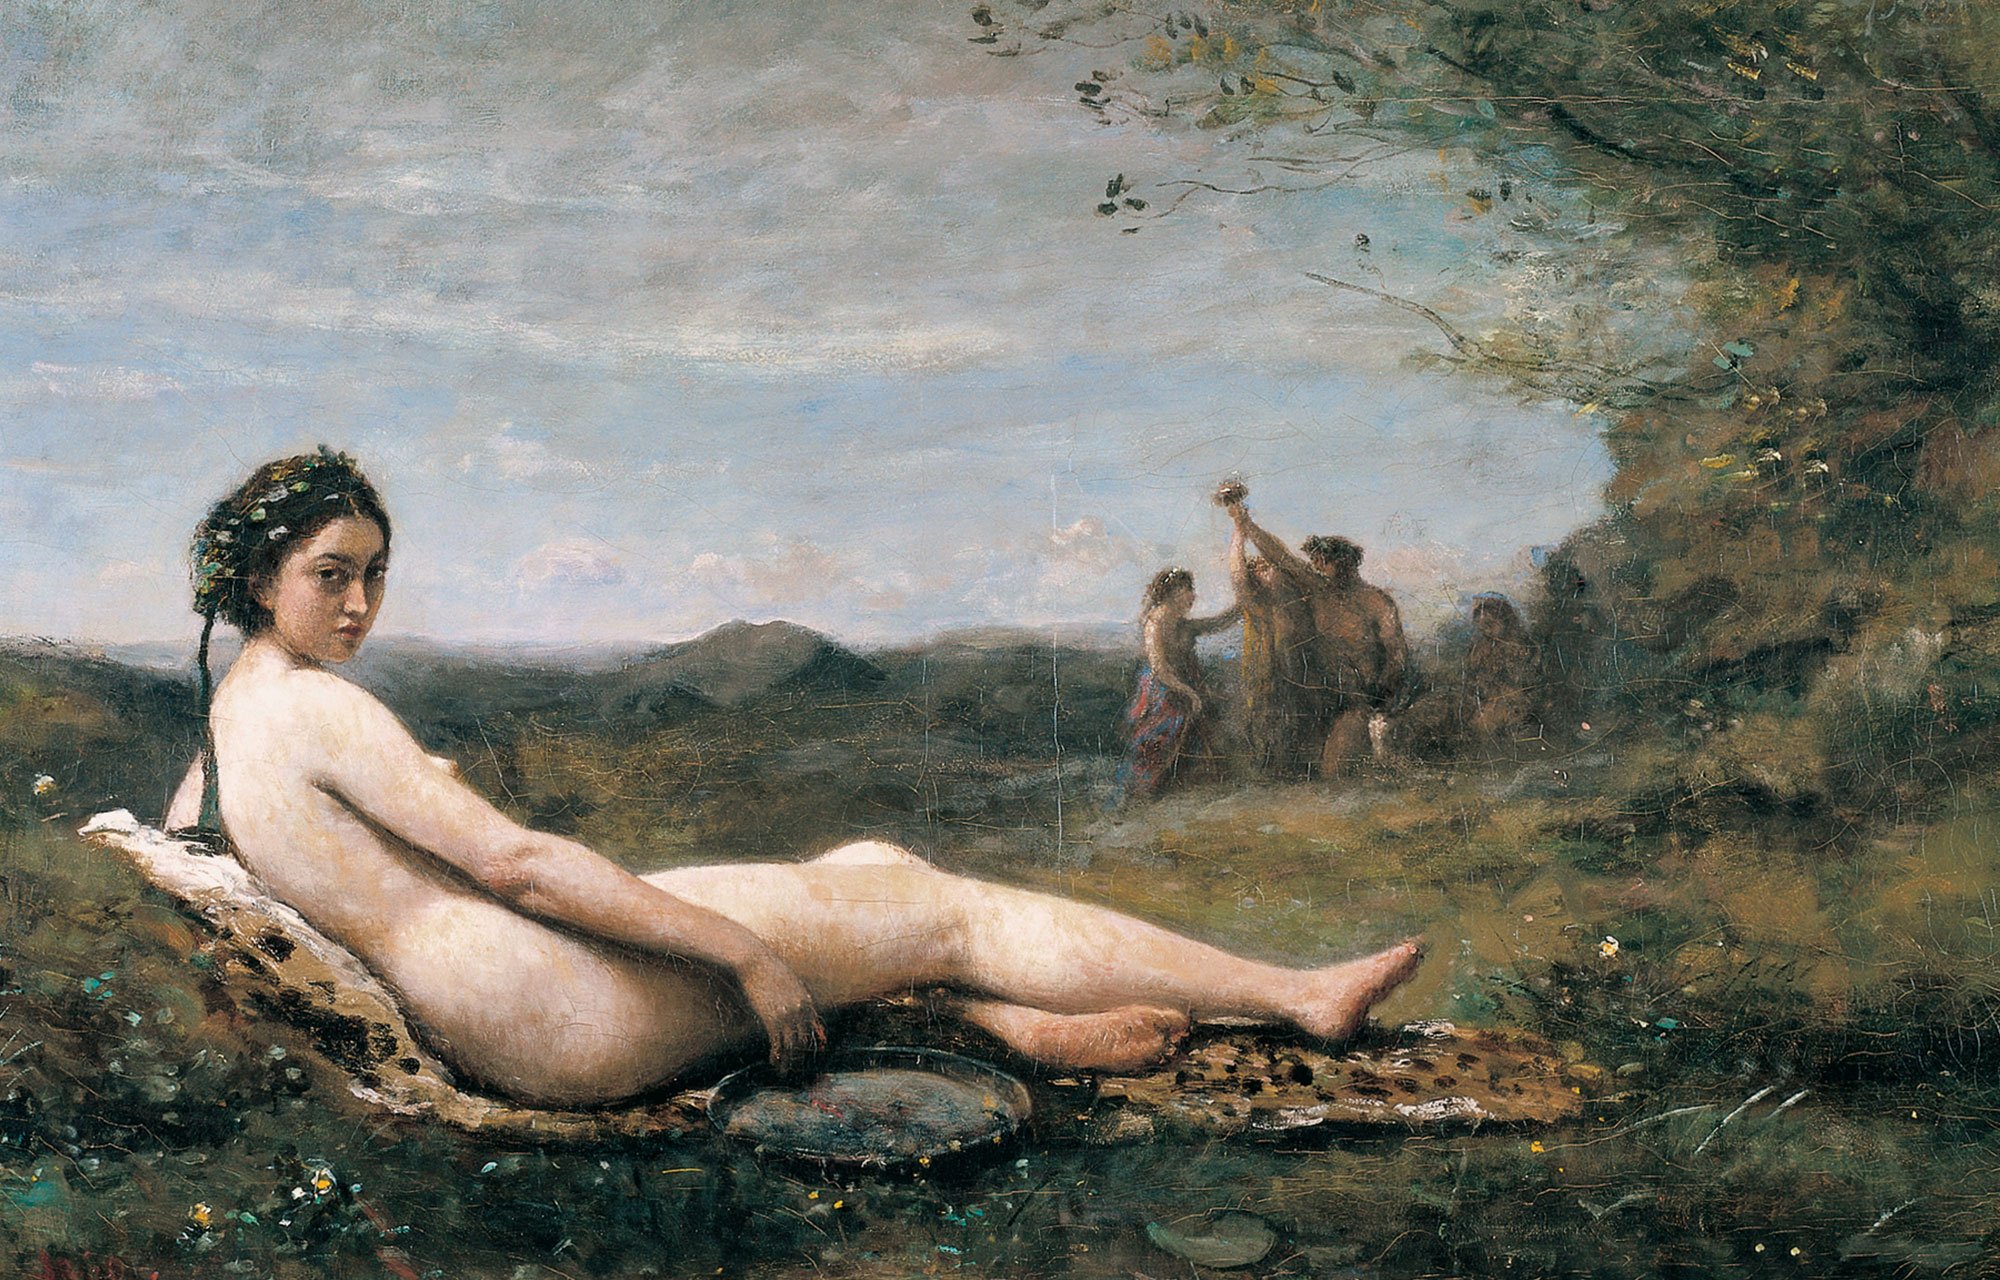 Eine junge Frau liegt nackt auf einem Pelz in der Landschaft. Im Hintergrund spielt eine Gruppe Menschen.